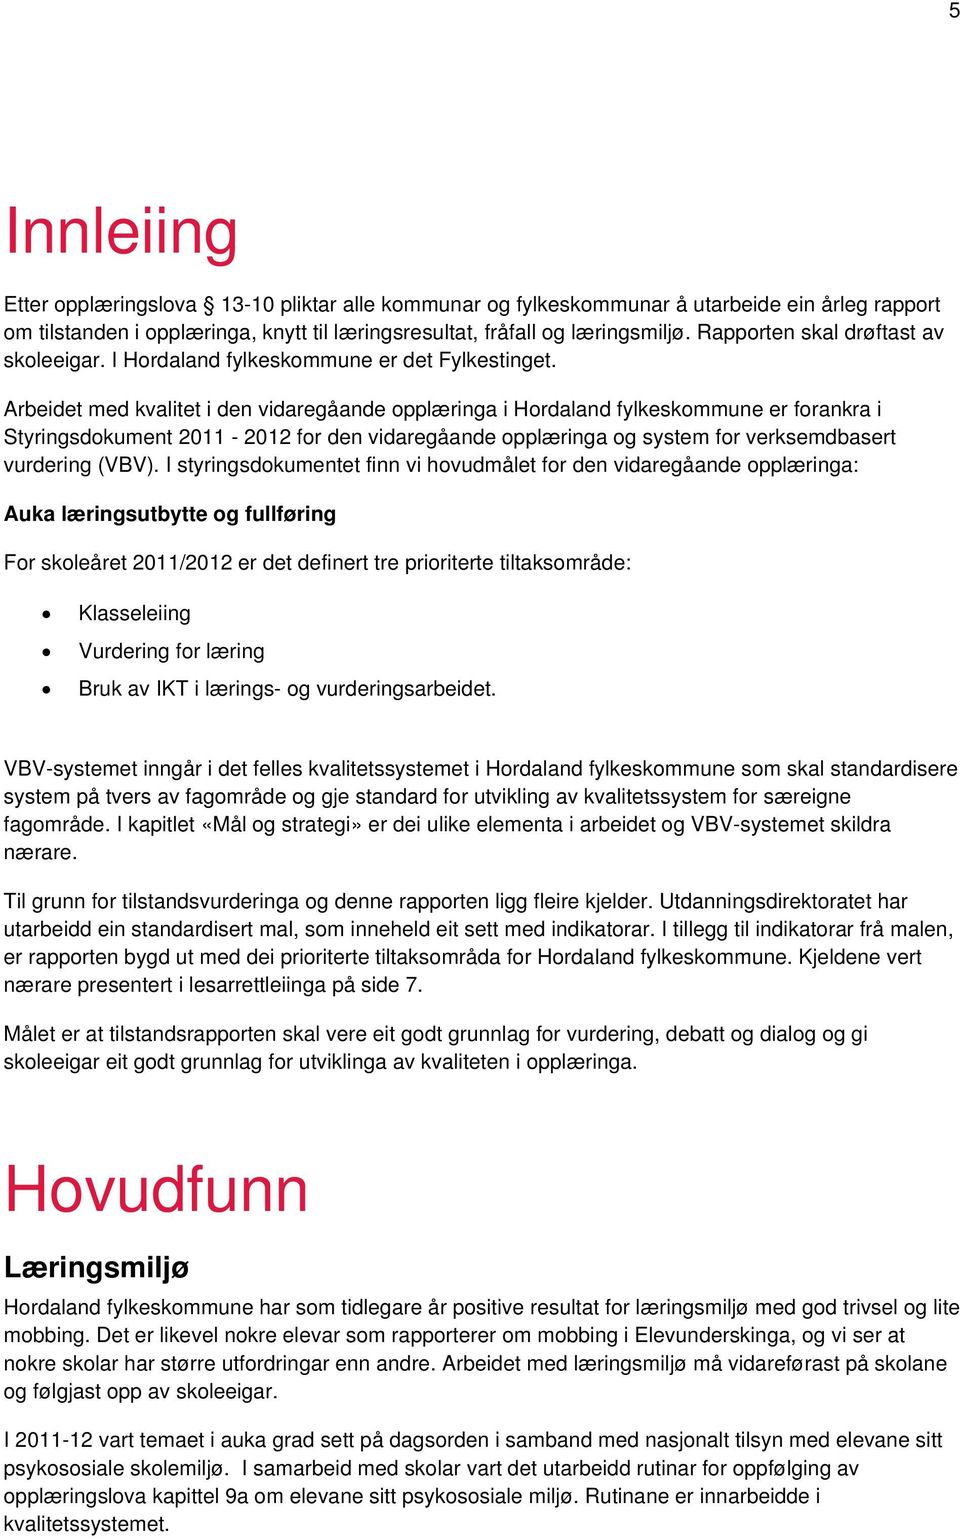 Arbeidet med kvalitet i den vidaregåande opplæringa i Hordaland fylkeskommune er forankra i Styringsdokument 2011-2012 for den vidaregåande opplæringa og system for verksemdbasert vurdering (VBV).